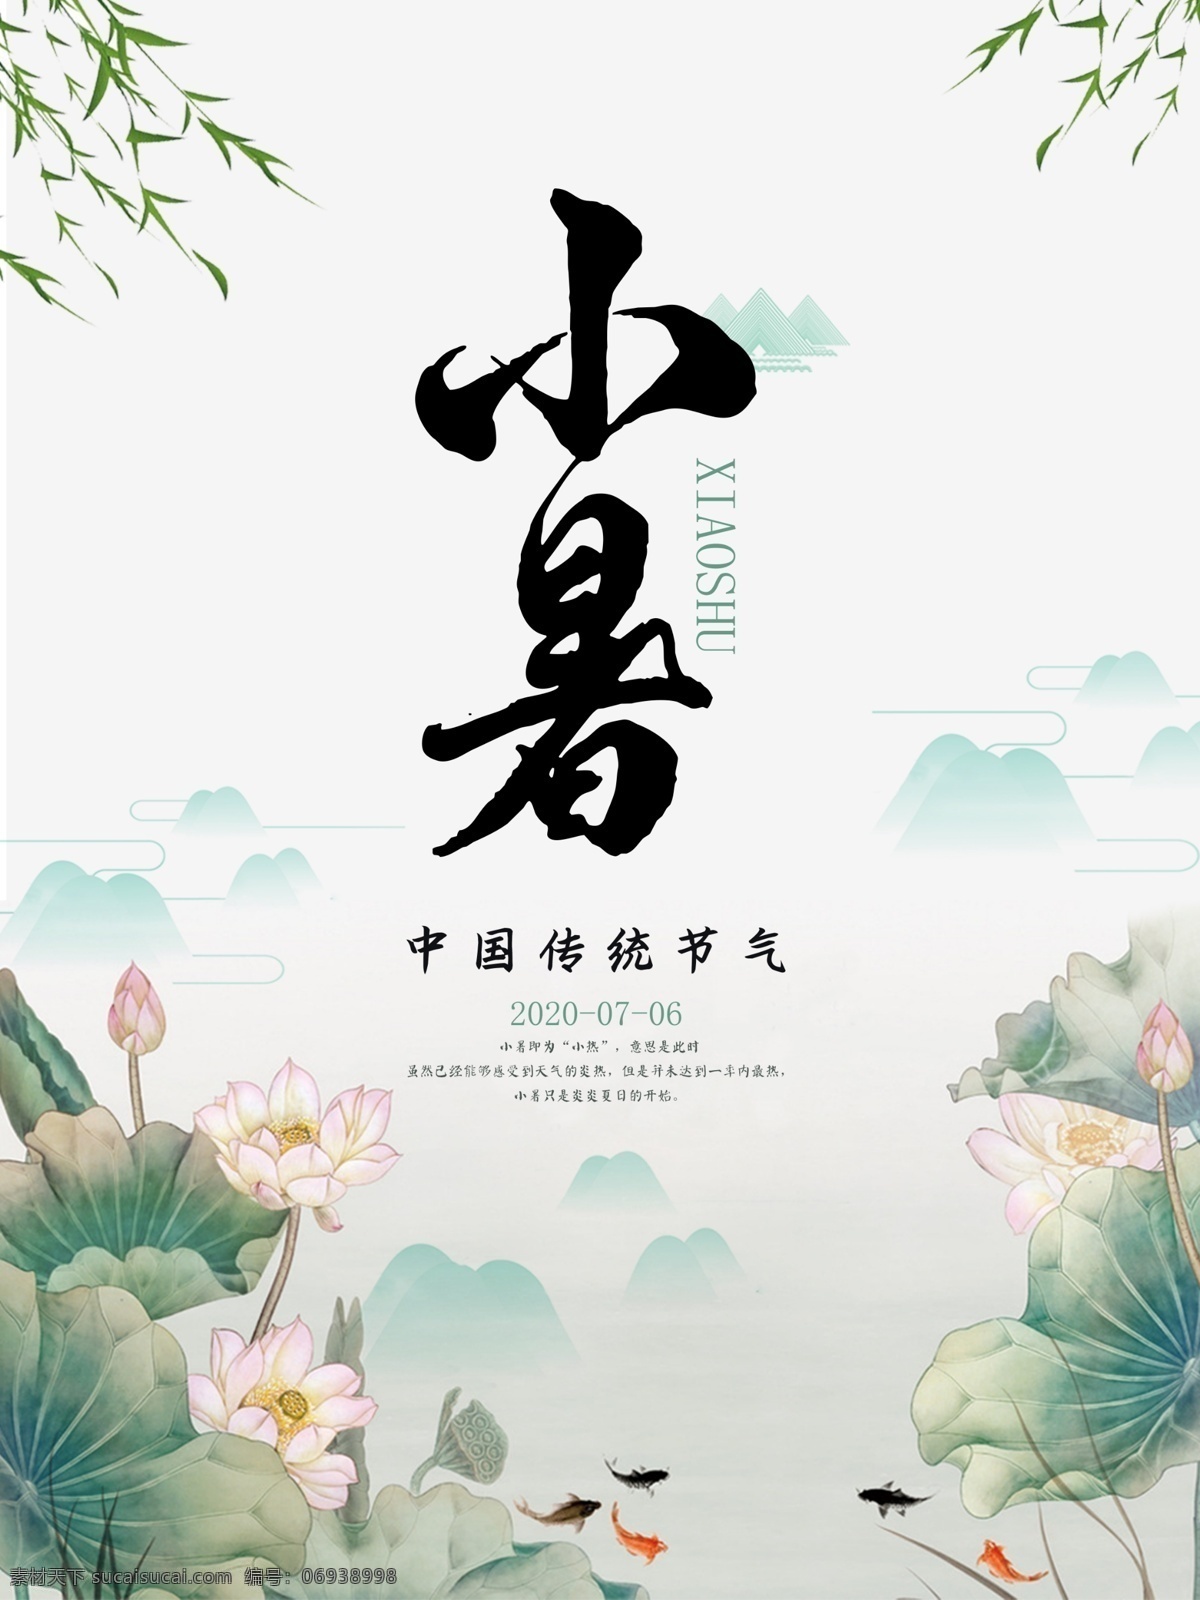 小暑 二十四节气 荷花 群山 柳树 中国风 水墨 传统节气 意境 传统文化 节日